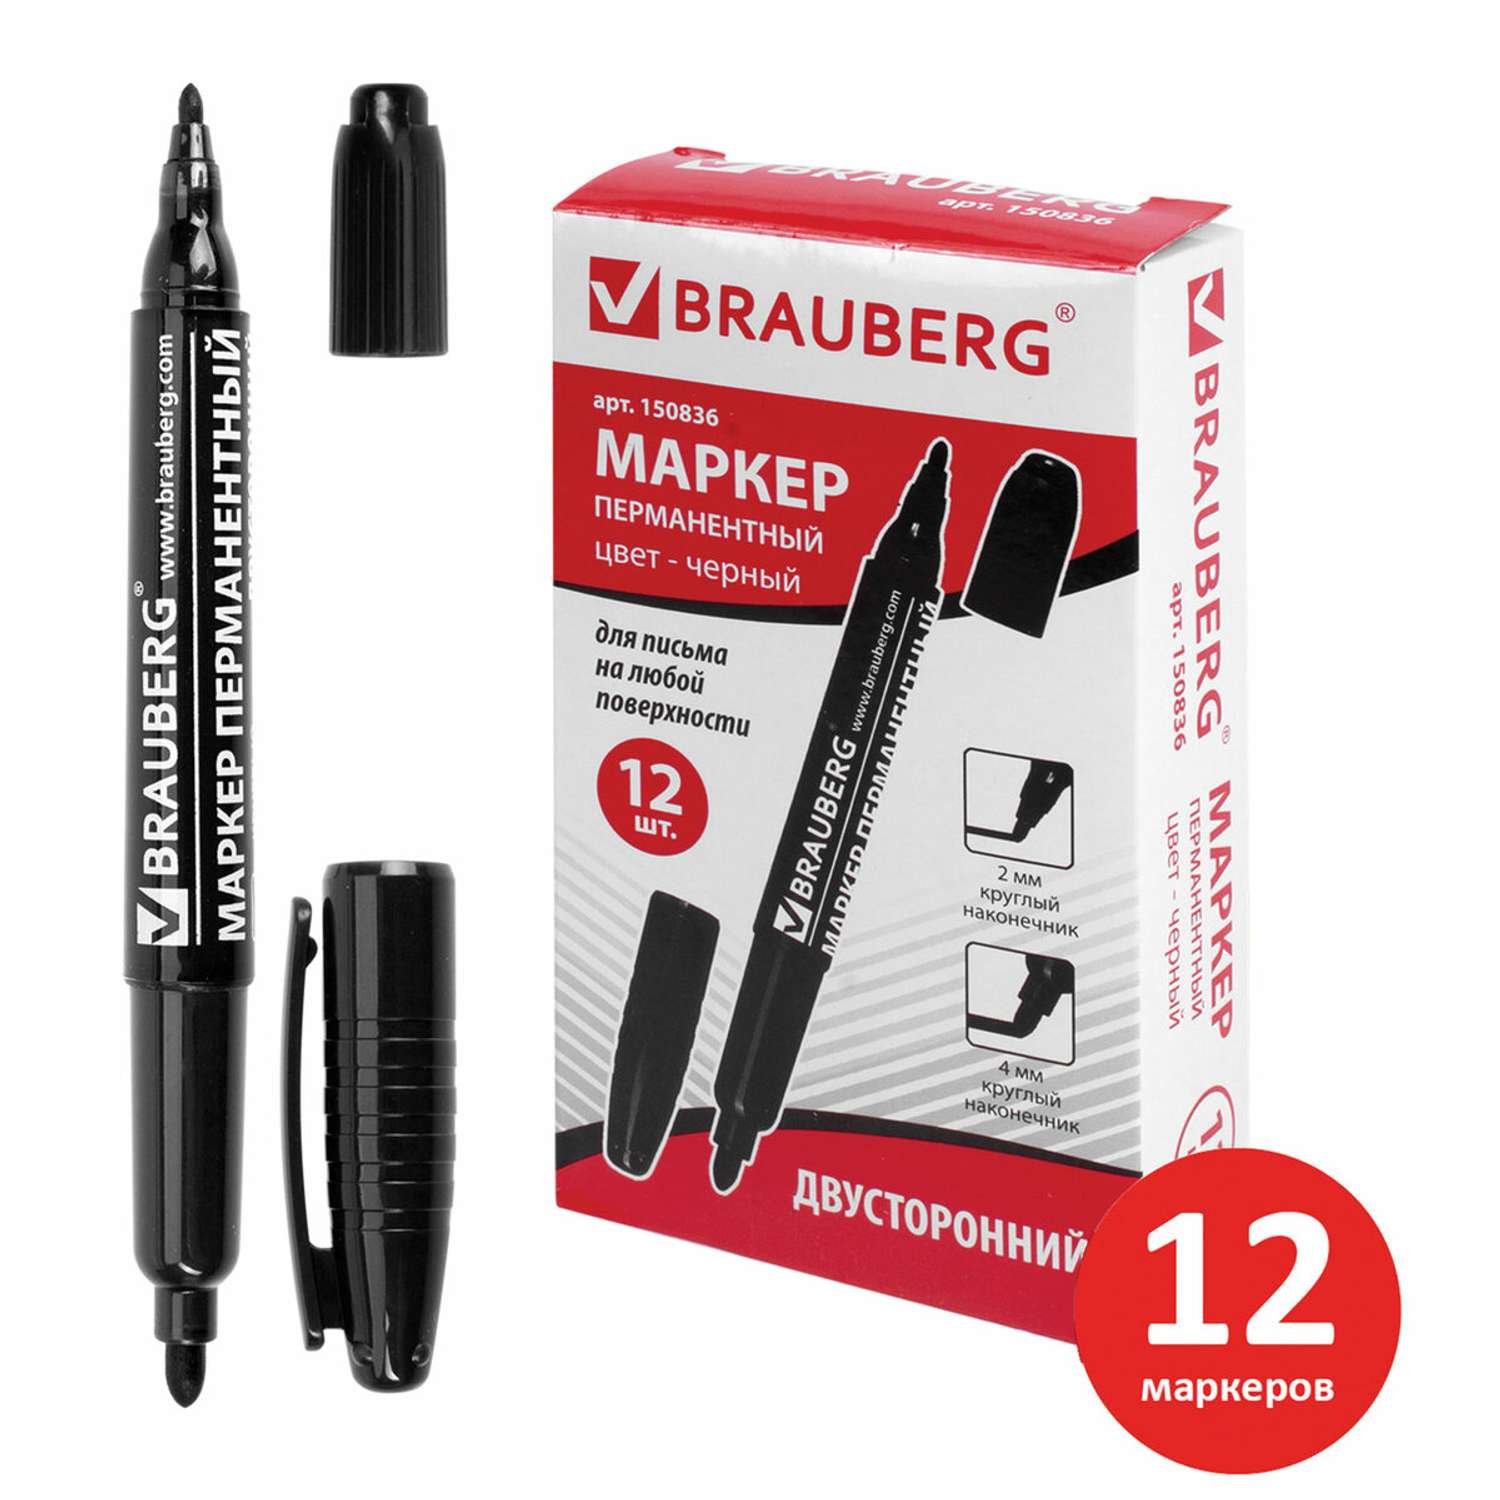 Маркеры Brauberg двусторонний 2мм/4мм Черный набор 12 штук перманентные нестираемые для рисования и письма - фото 2